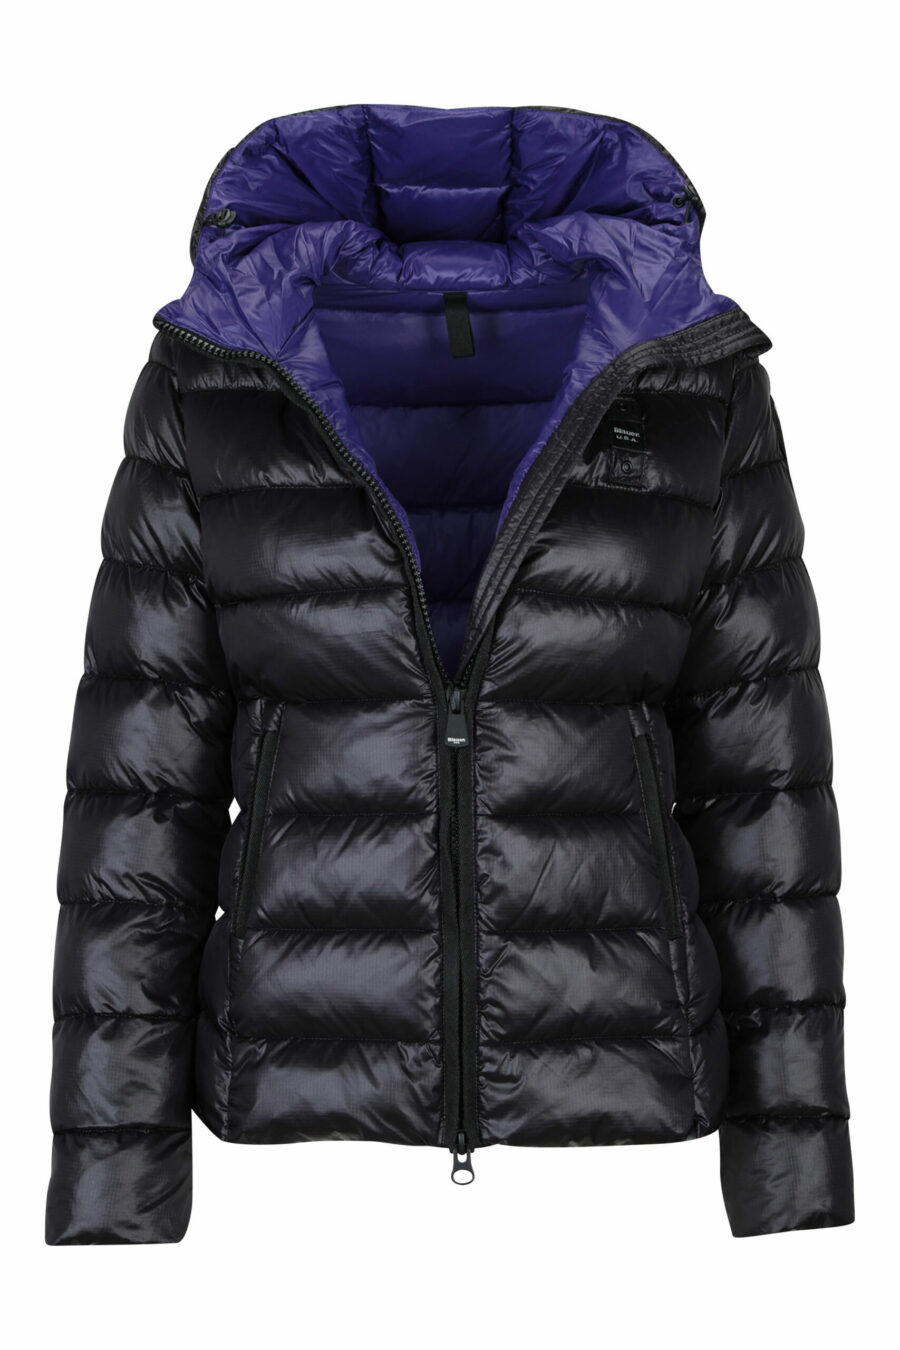 Veste à capuche noire à doublure droite et intérieur violet avec patch logo - 8058610683146 1 à l'échelle